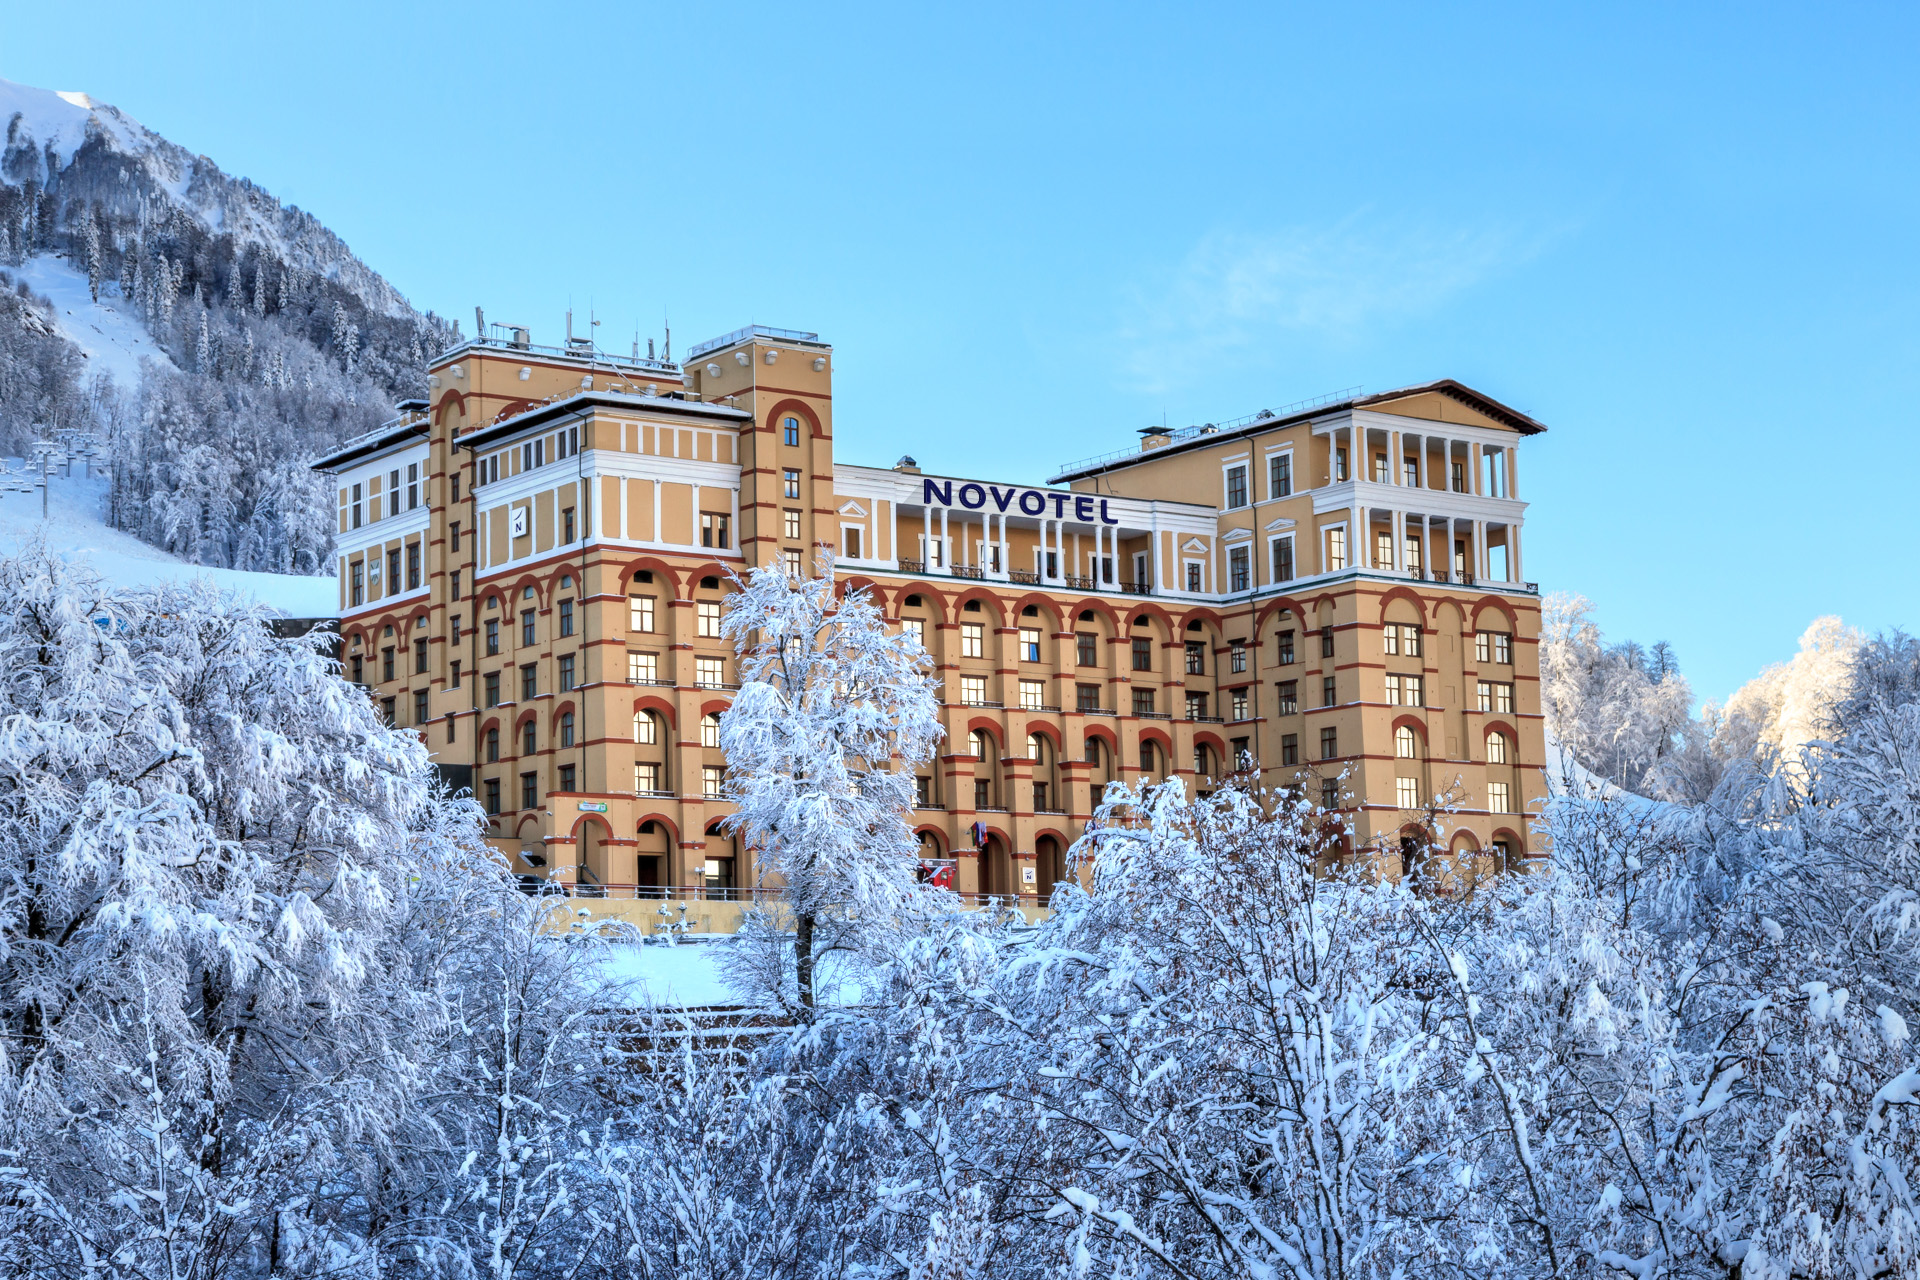 Отель под брендом Novotel откроется на курорте "Горки Город" в Сочи 1 декабря